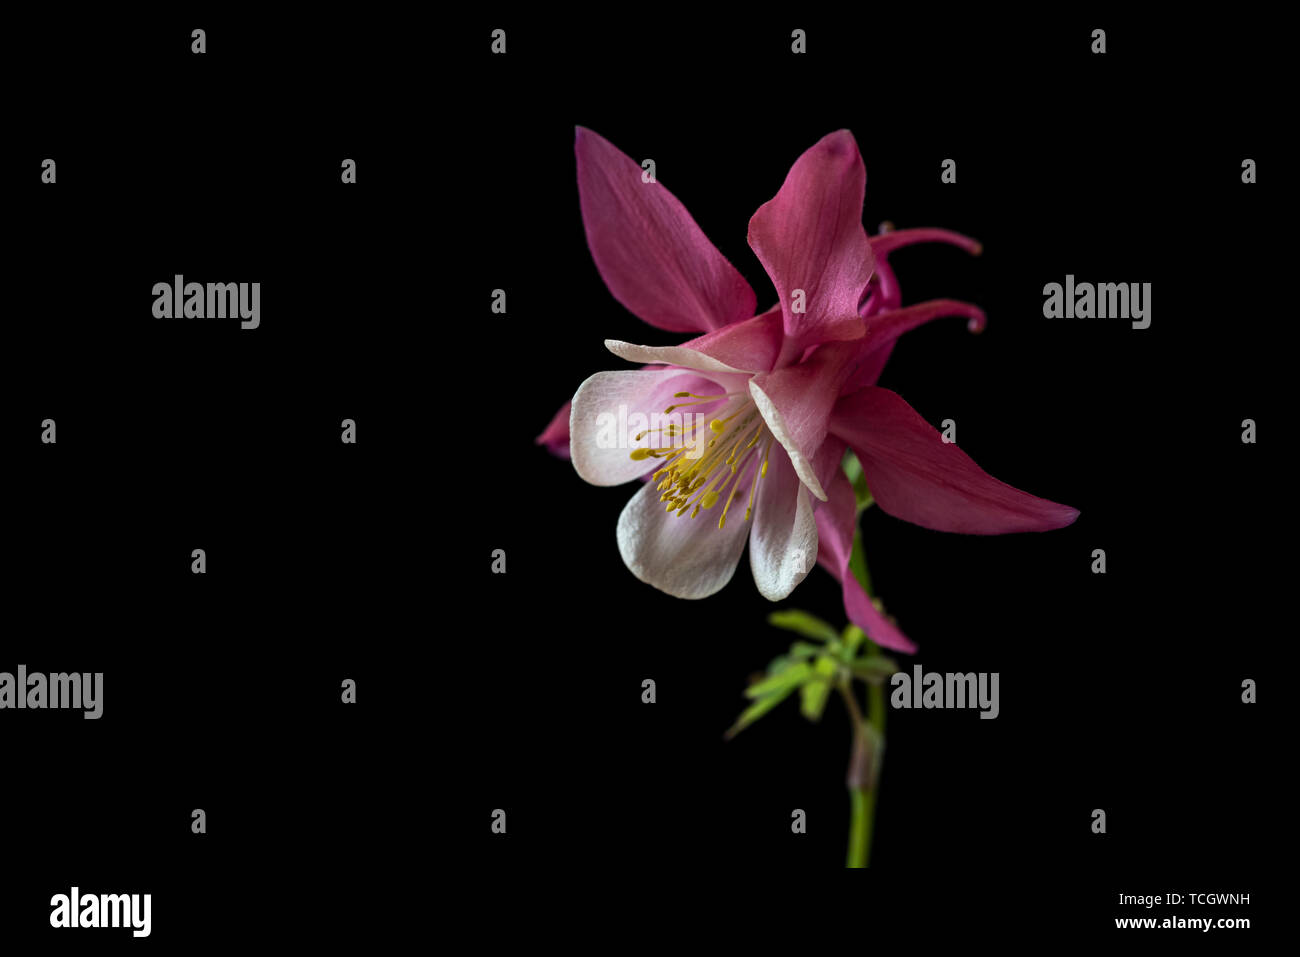 Aquilegia Magie di Primavera Rosa e Bianco,molla serie magic,Ranunculaceae,low key life science, sfondo nero Foto Stock